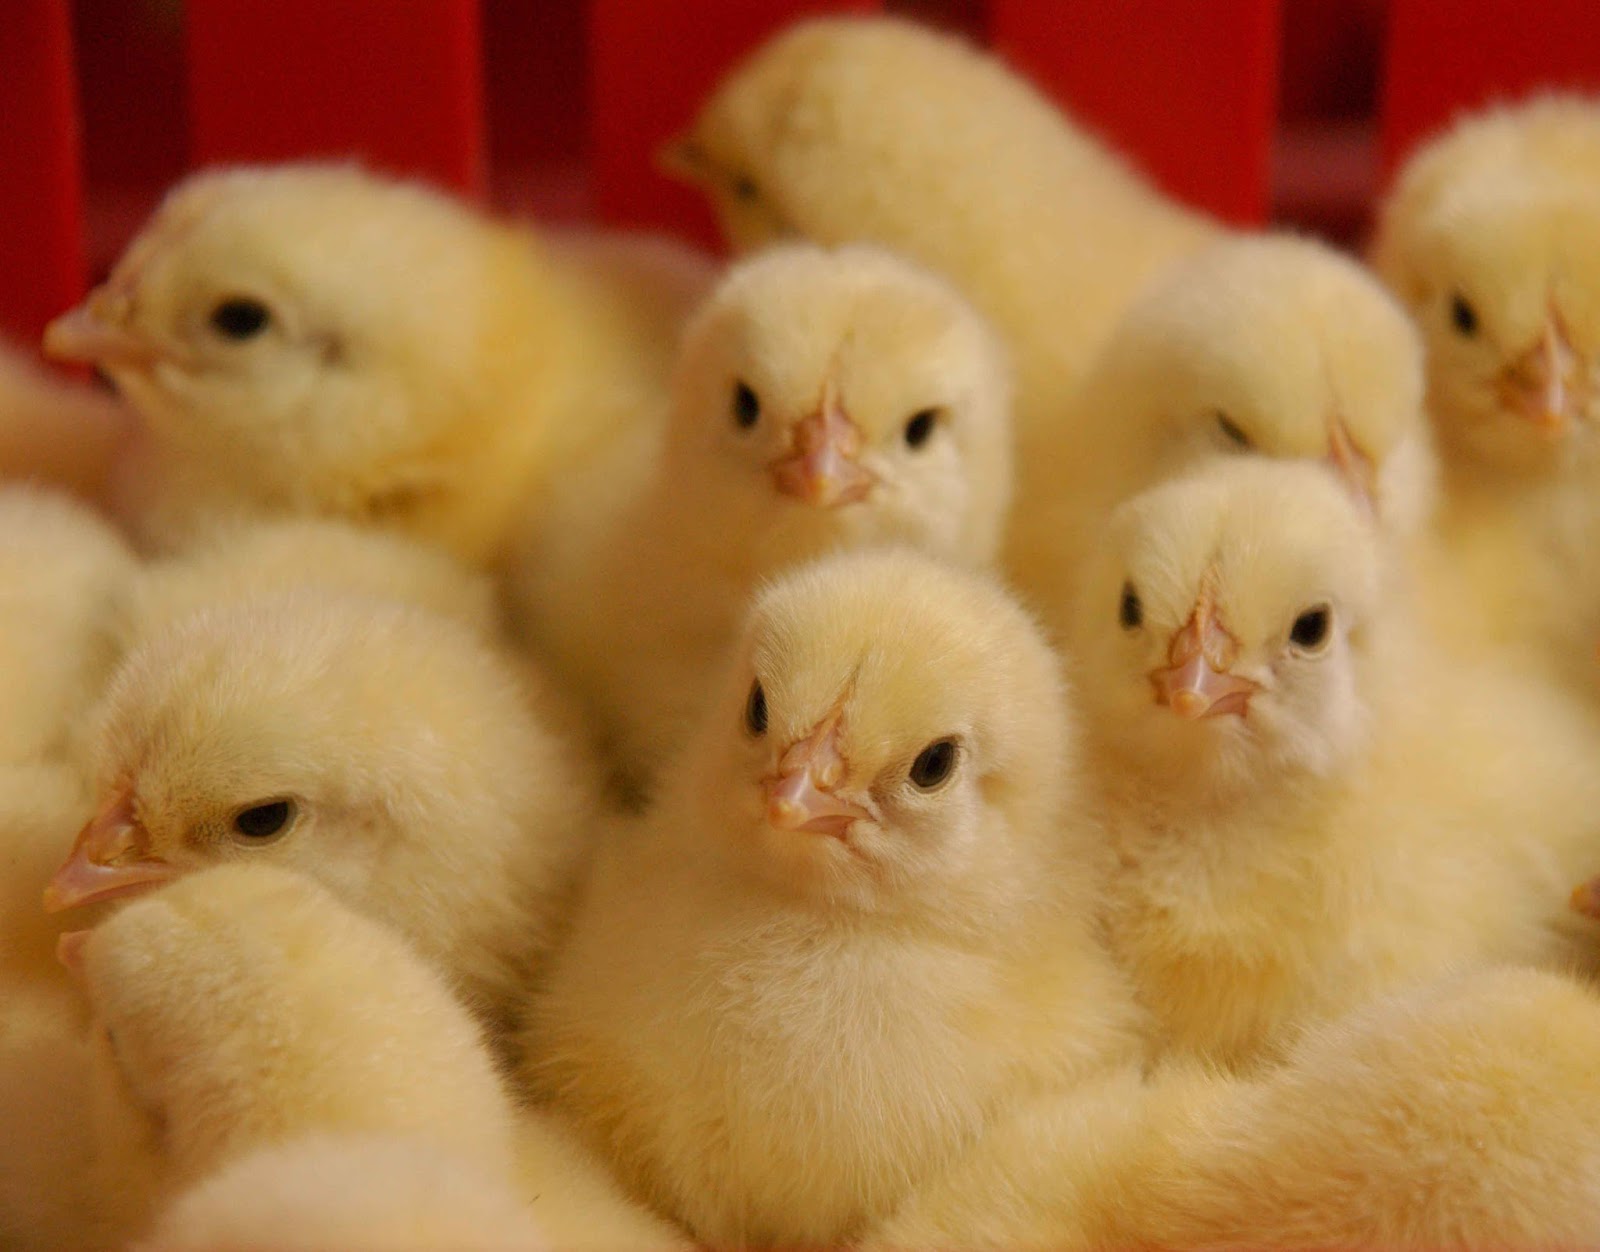 Pertumbuhan yang sangat pesat pada ayam broiler adalah sebesar merupakan kontribusi dari aspek perubahan genetik sedangkan nutrisi pakan hanyalah